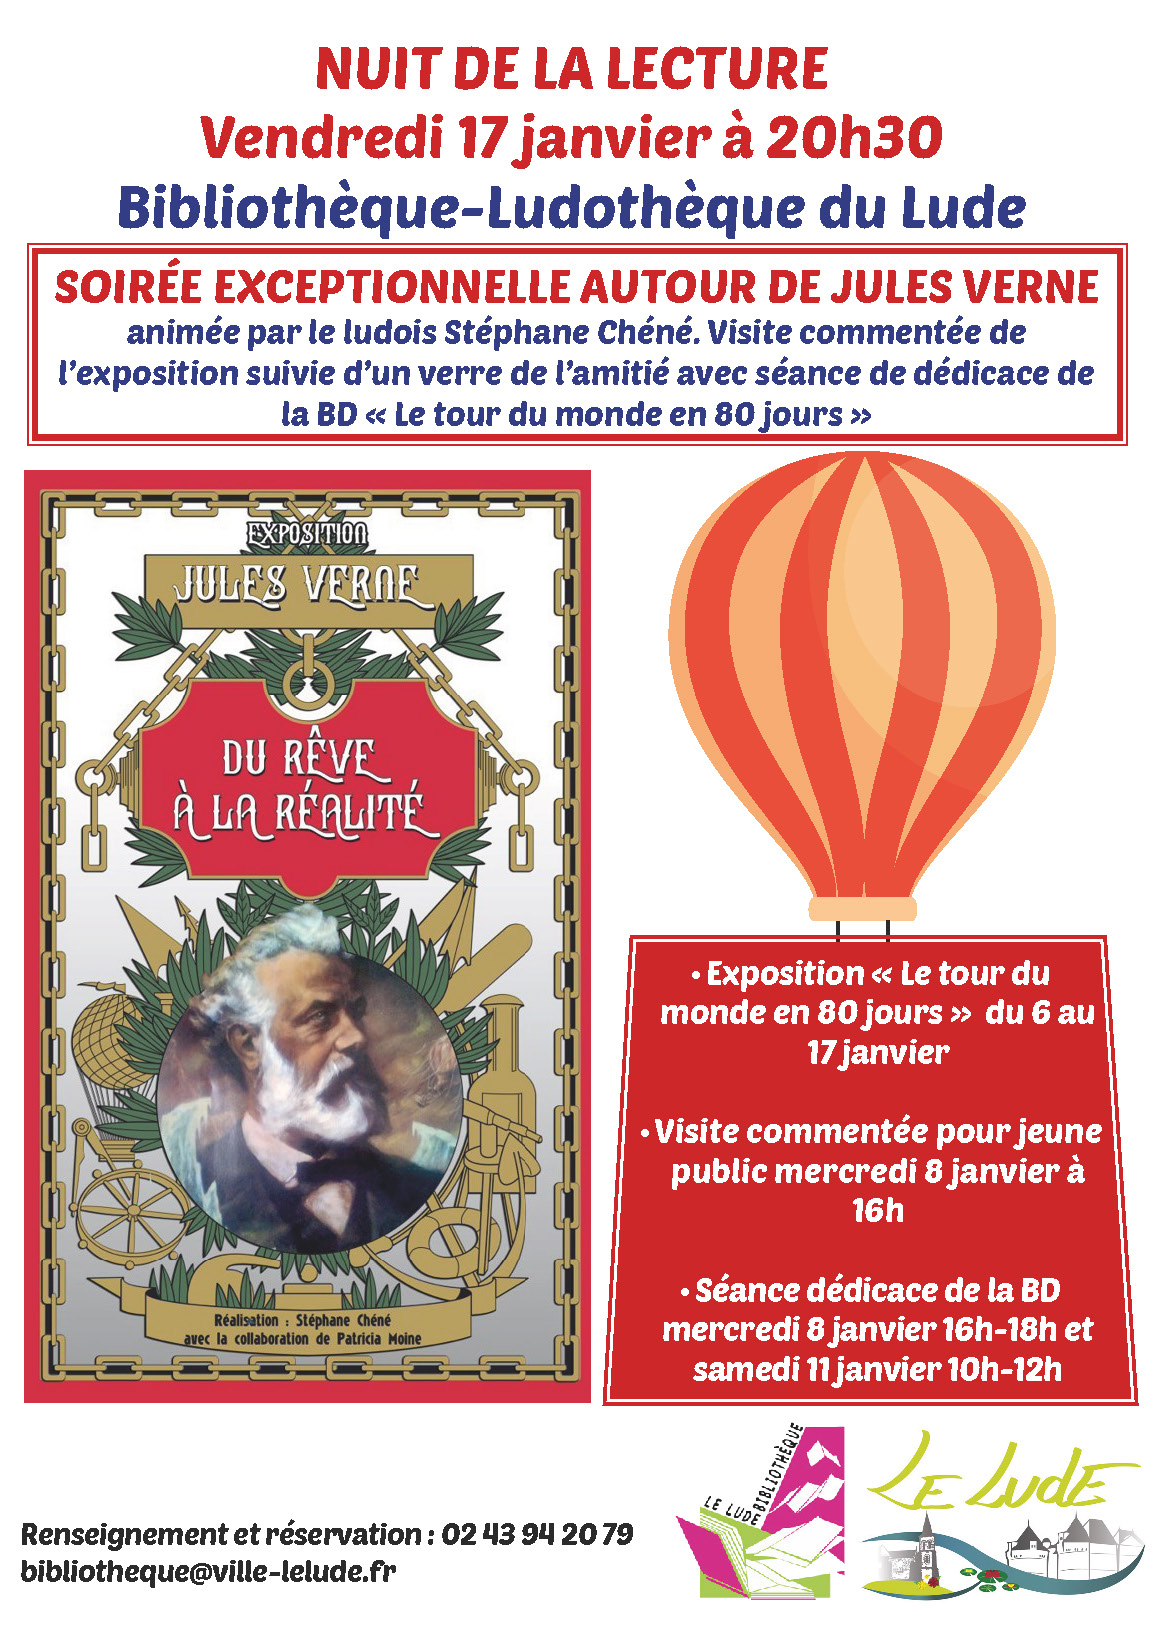 You are currently viewing NUIT DE LA LECTURE Vendredi 17 janvier à 20h30 Bibliothèque Ludothèque